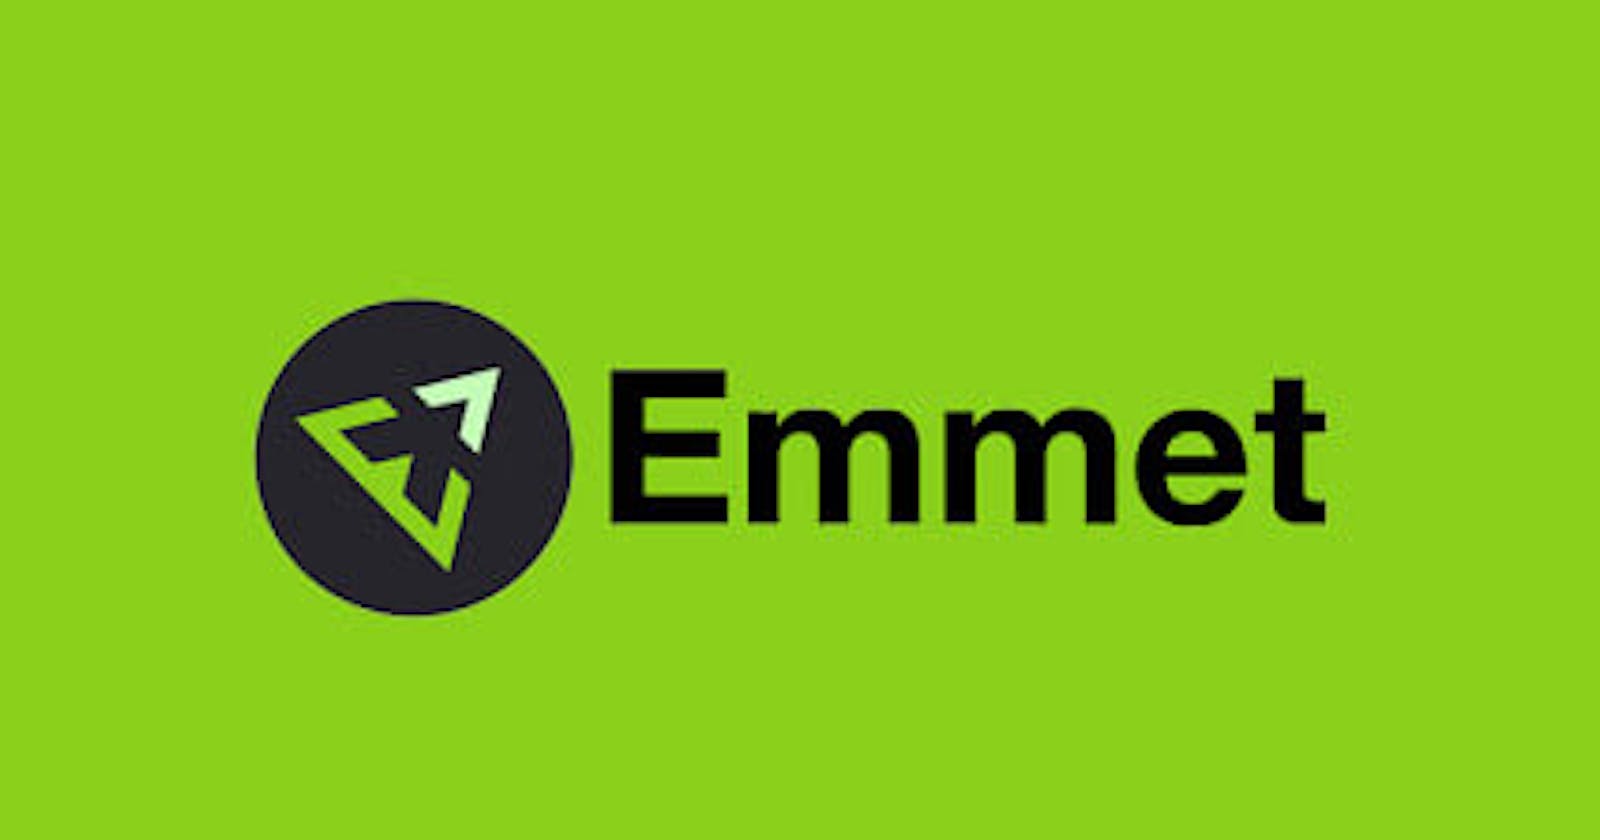 What is Emmet?